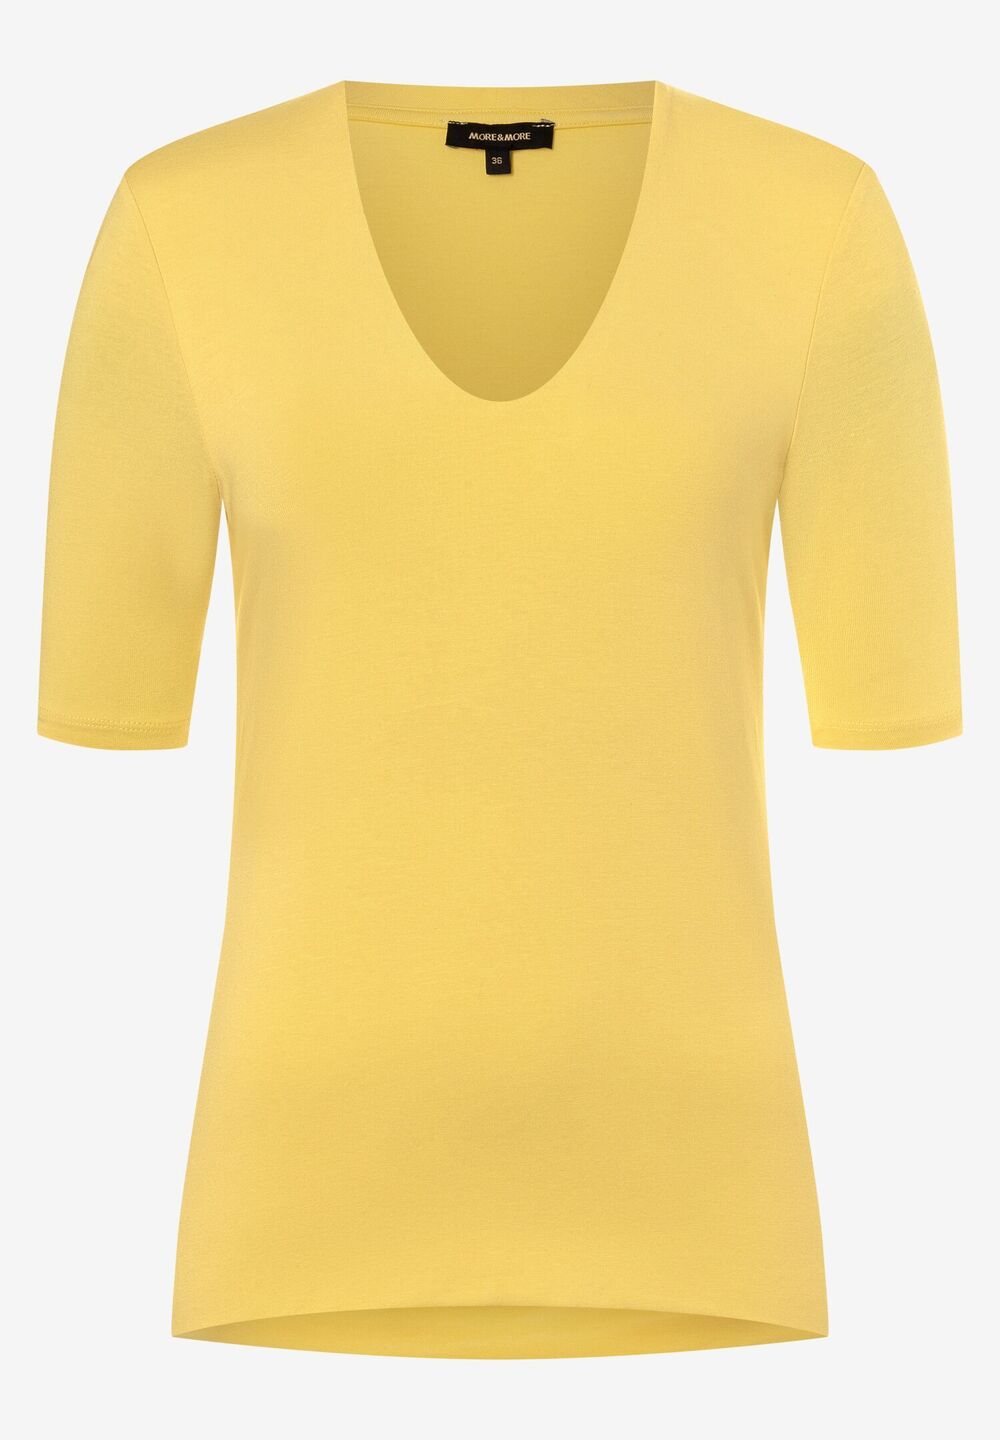 T-Shirt, daisy yellow, Frühjahrs-Kollektion, gelb Frontansicht